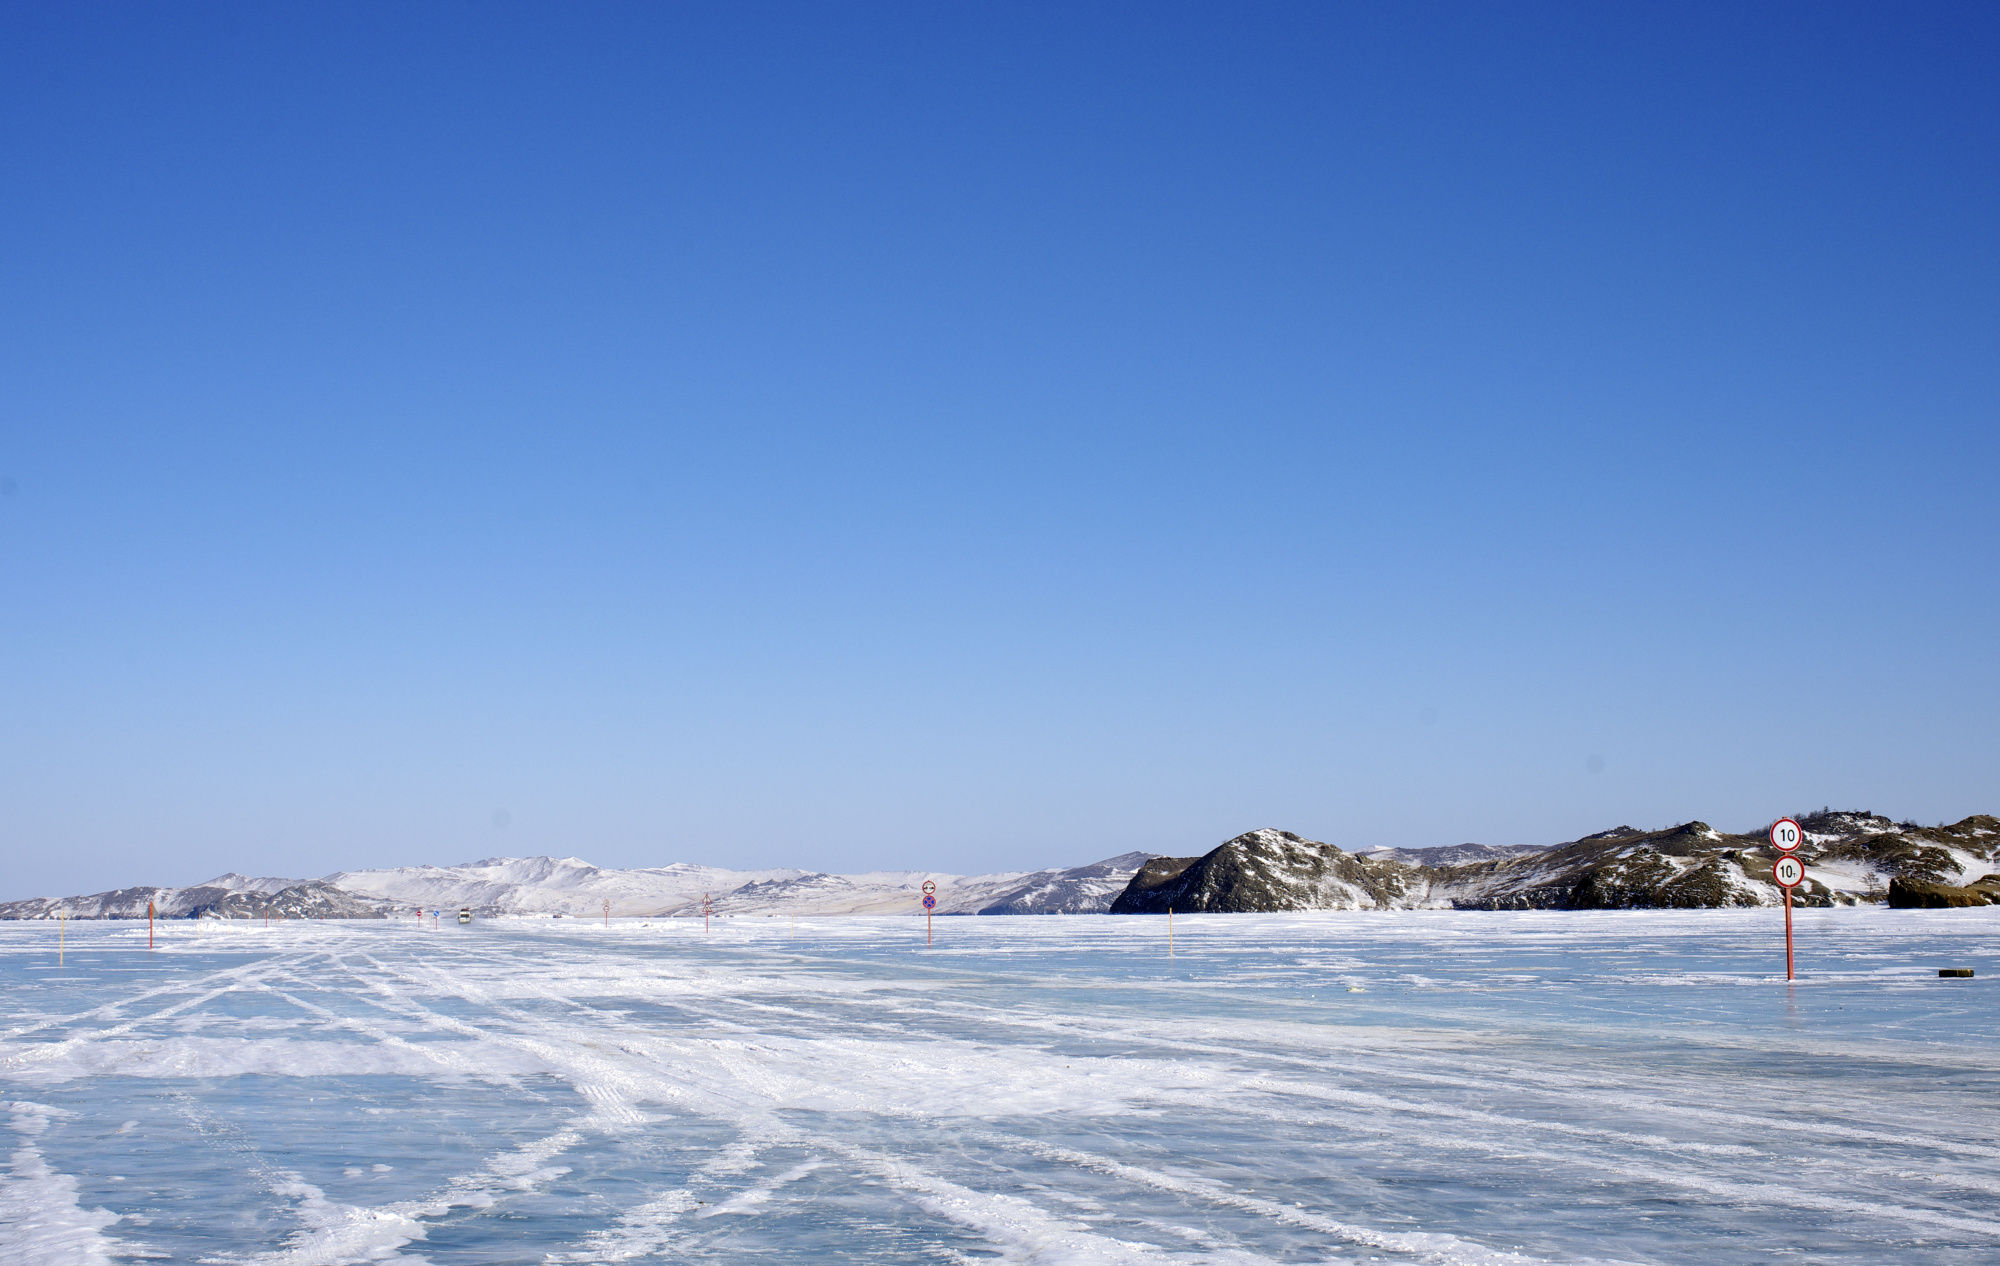 На Байкале открыли ледовую переправу длиной 11 км